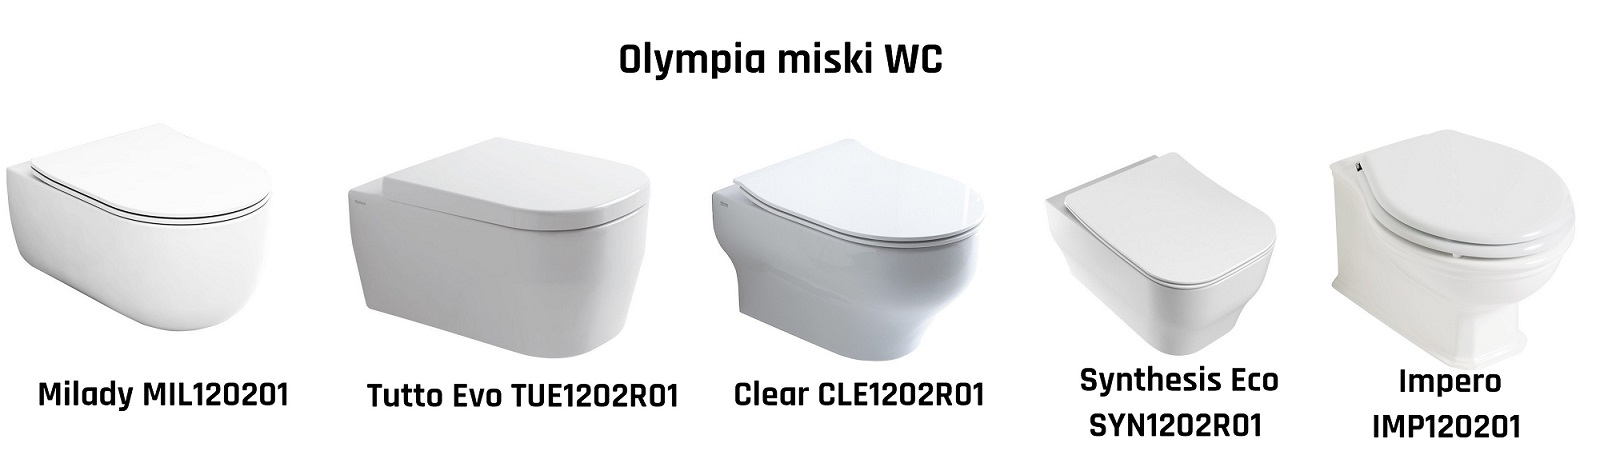 miski-wc-olympia